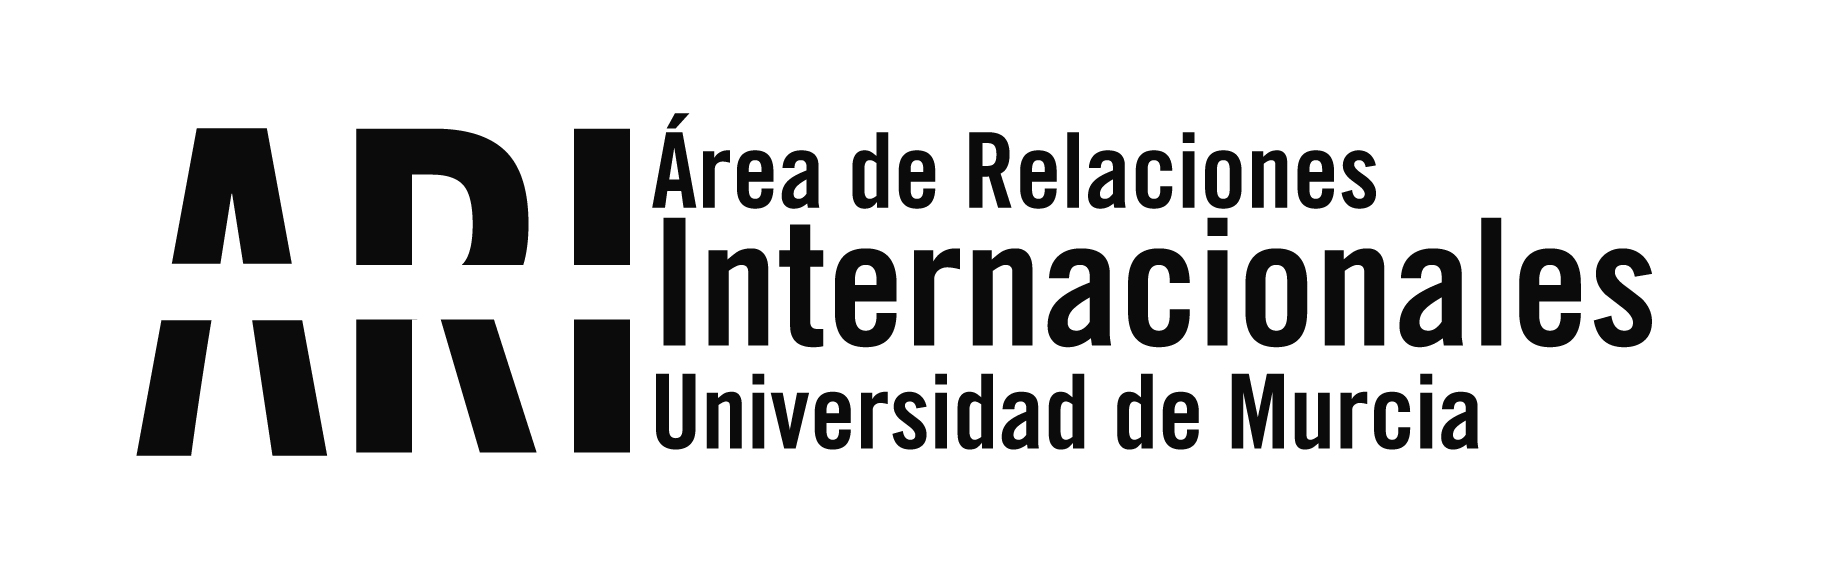 El proyecto Erasmus+ "Democratic Heritage" realiza un taller en Murcia para la enseñanza de valores cívicos y democráticos a través de elementos patrimoniales de la Región - Área de Relaciones Internacionales